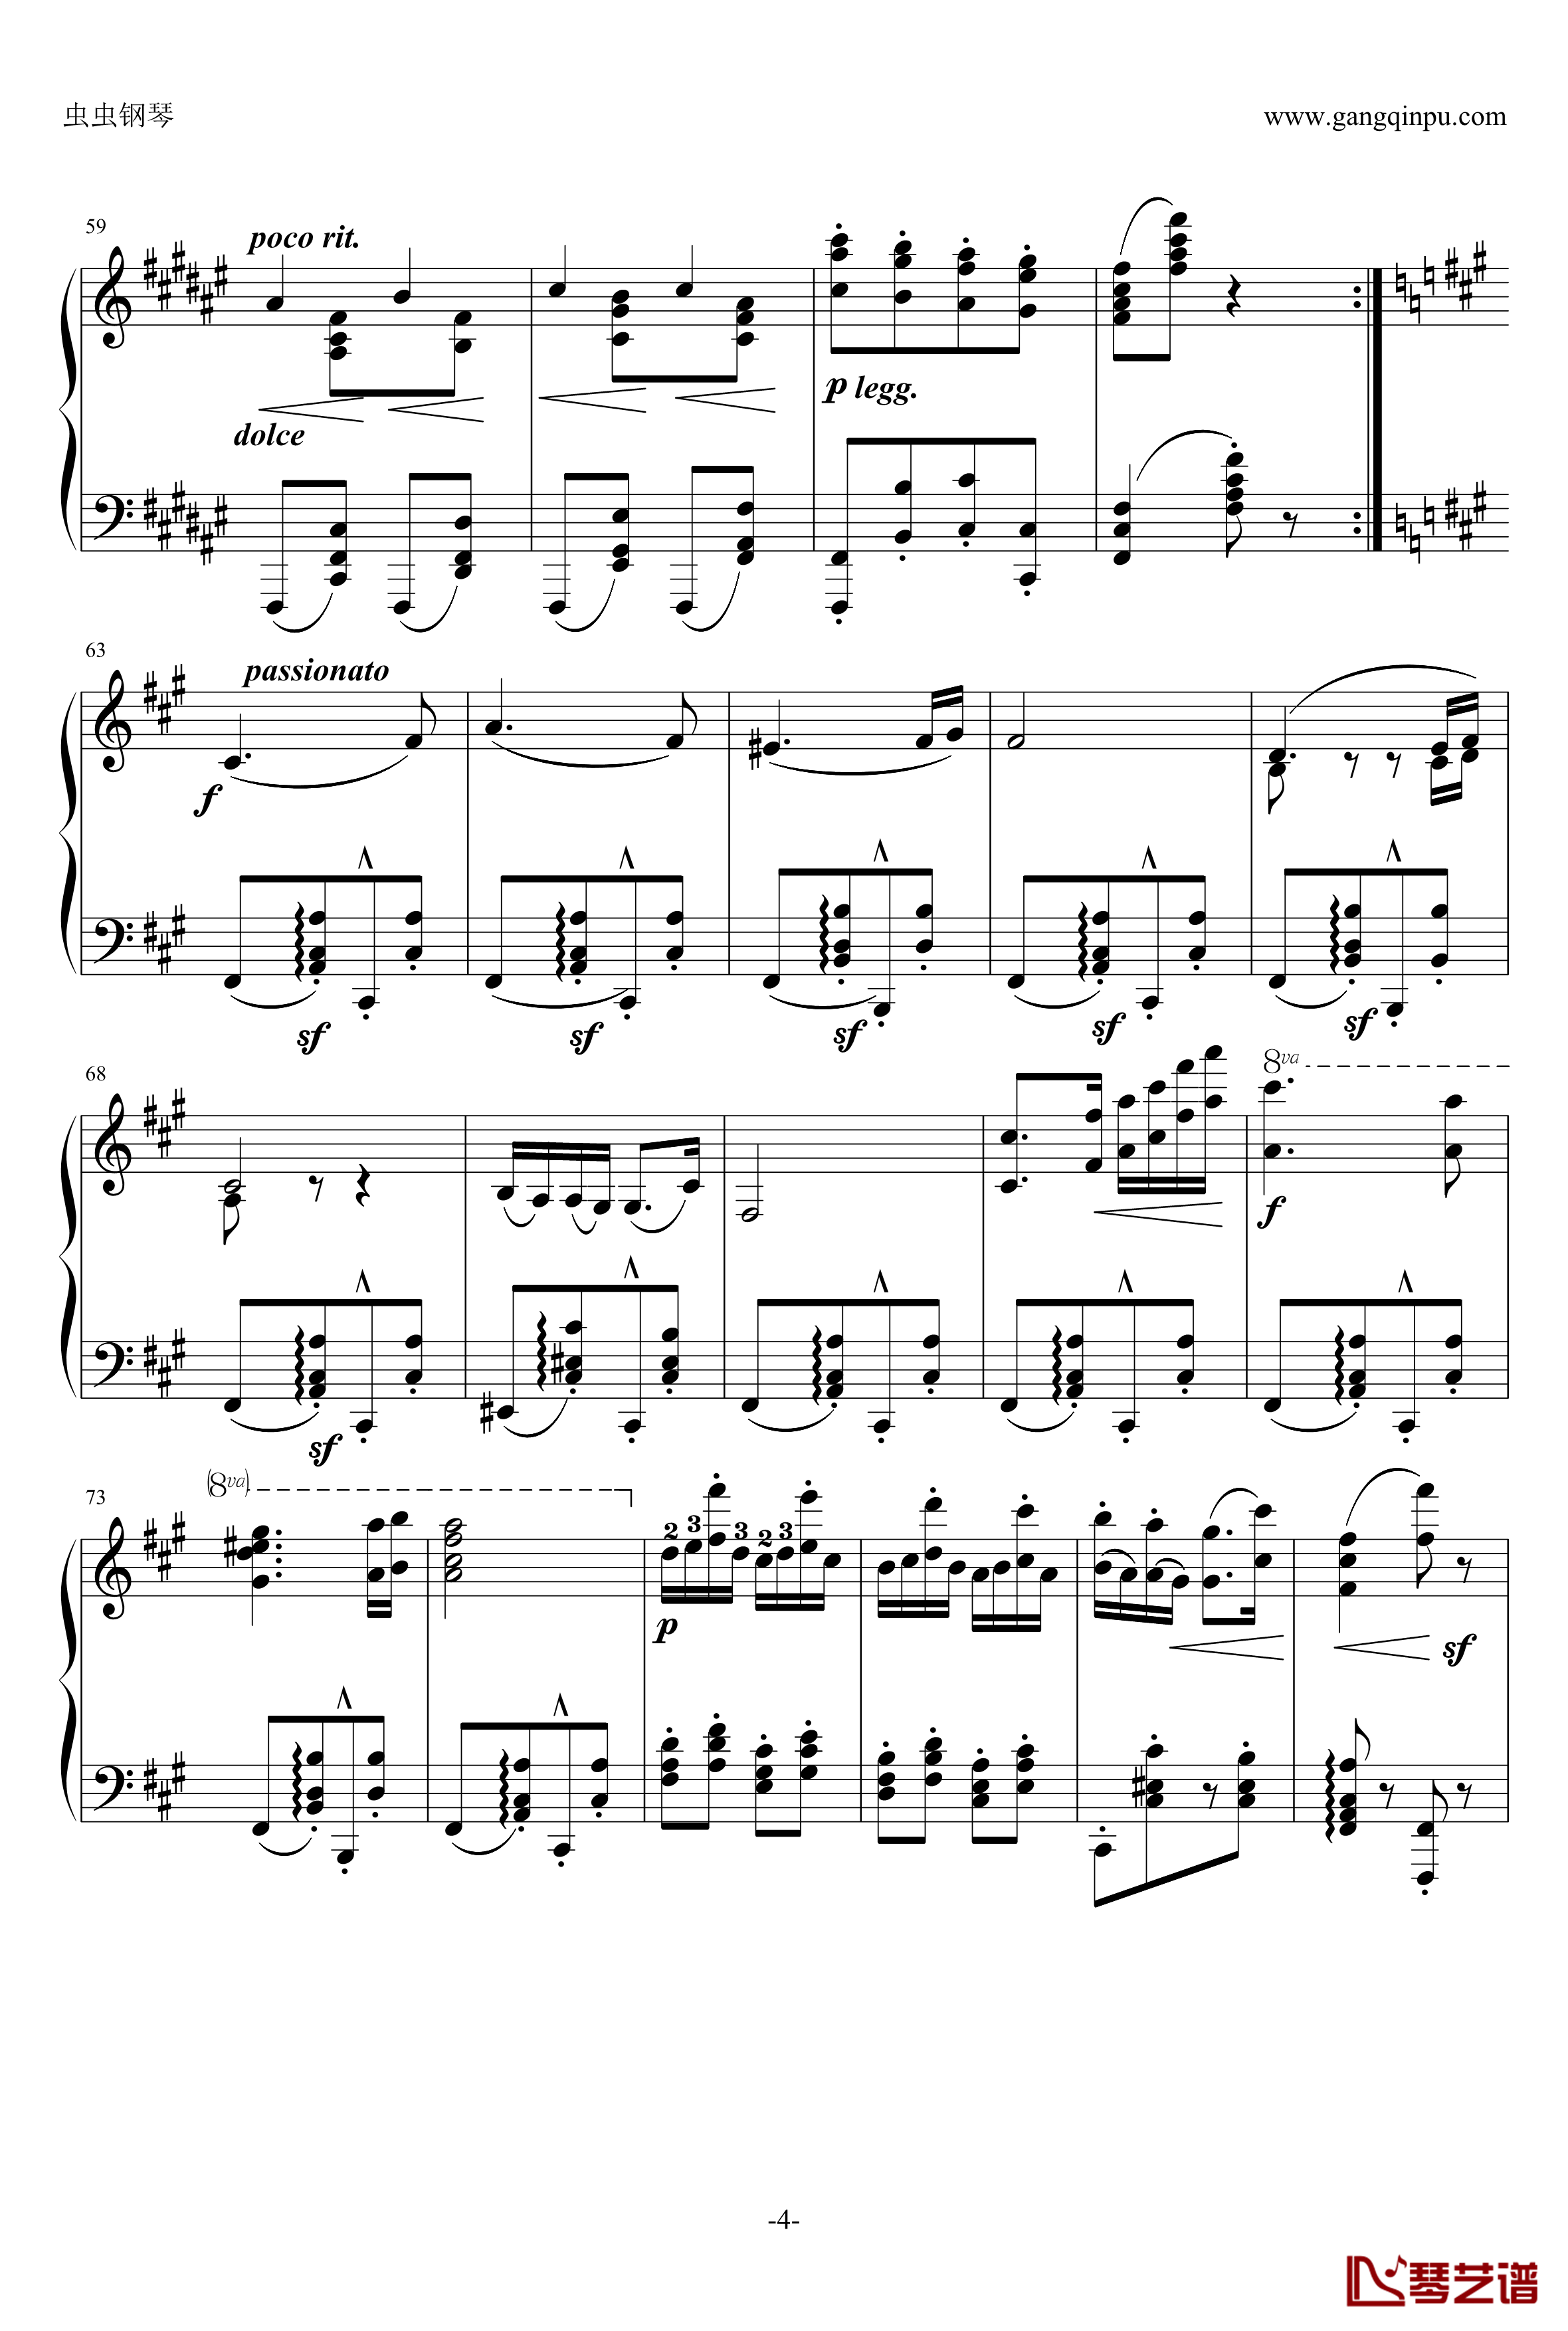 第五号匈牙利舞曲钢琴谱-原谱-勃拉姆斯-Brahms4